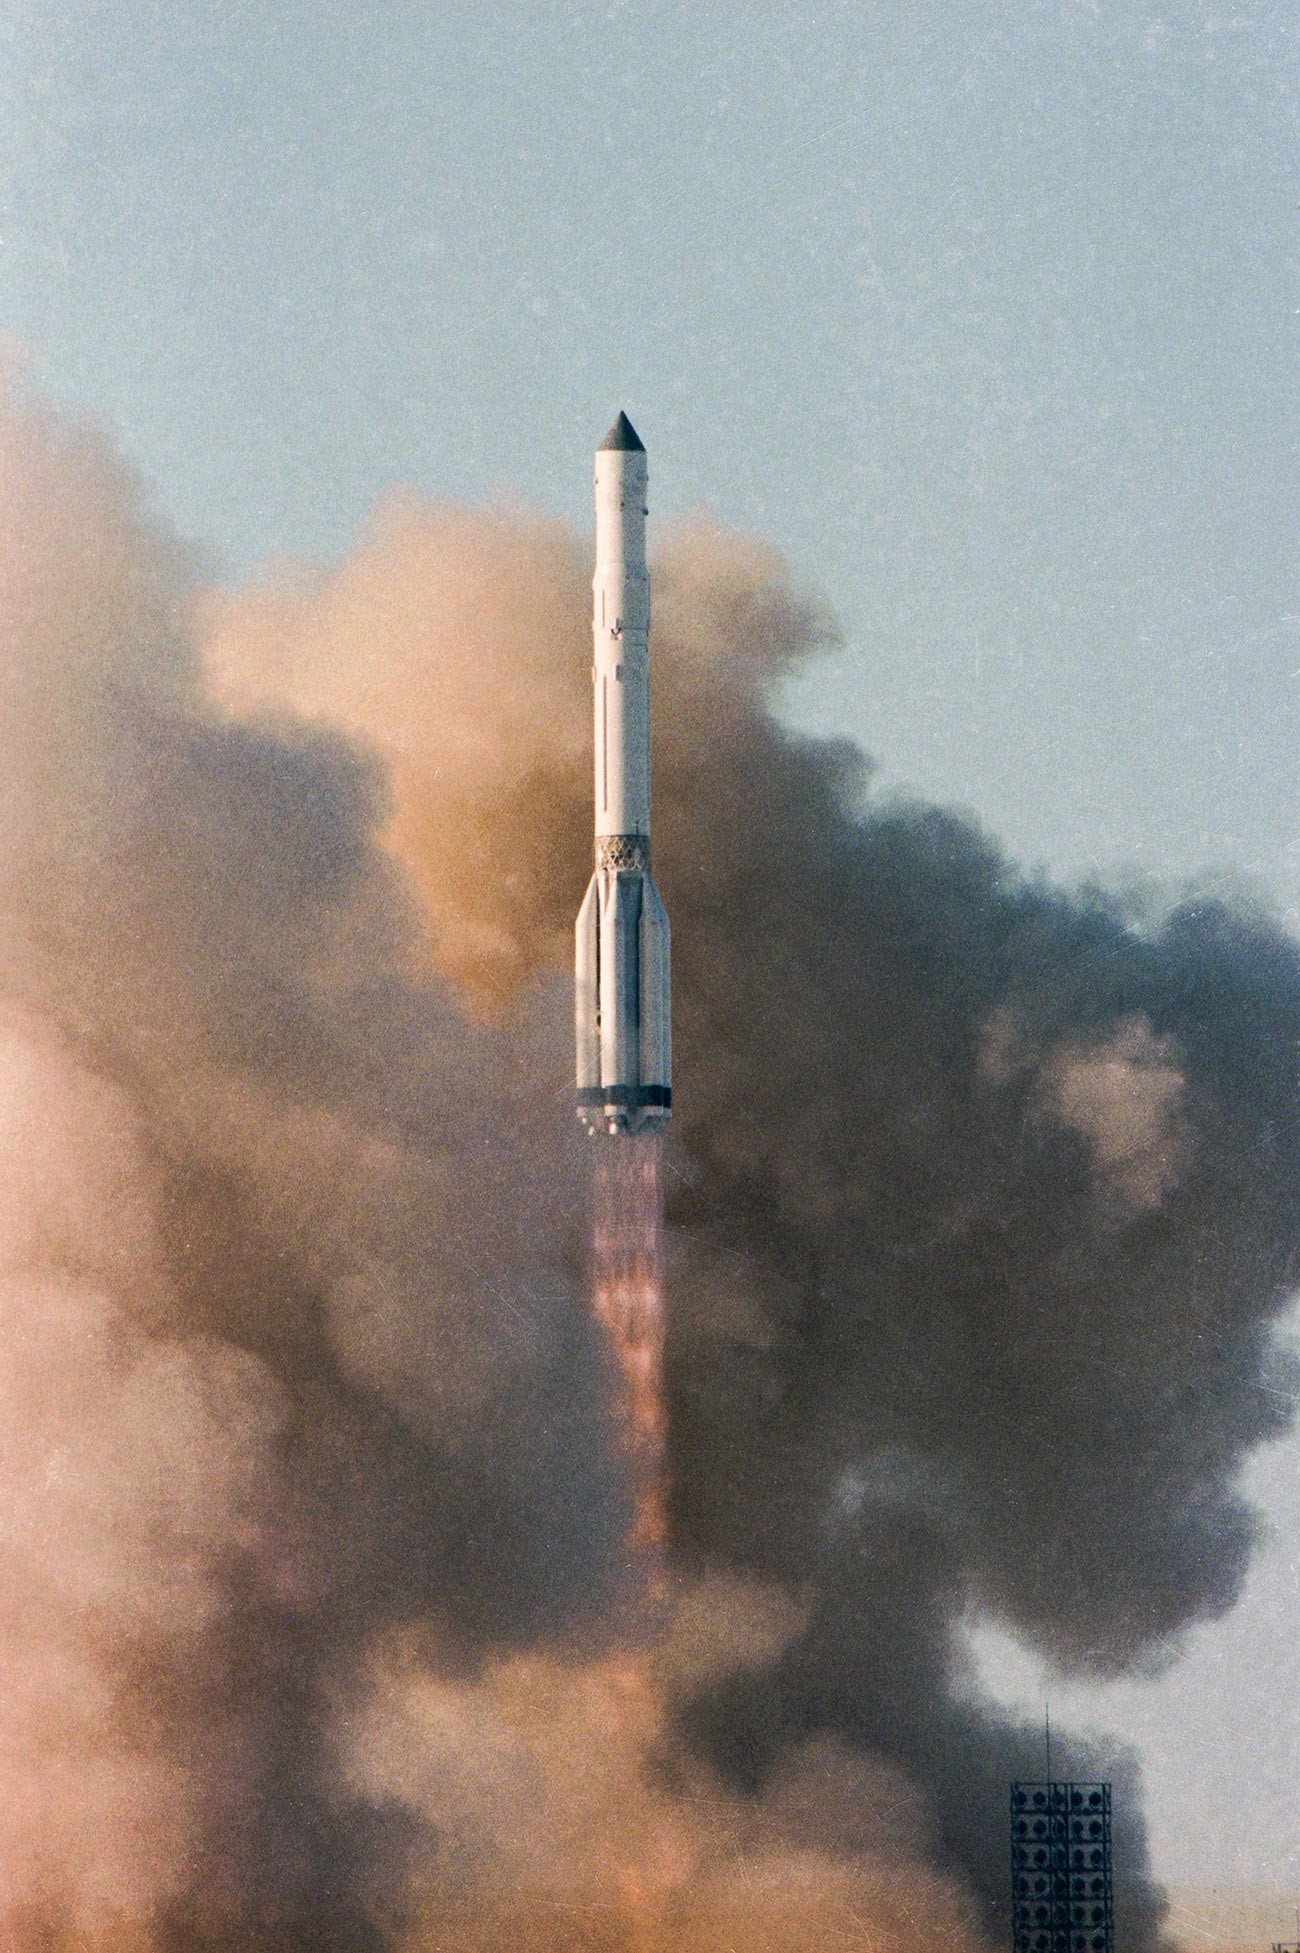 Lançamento da missão espacial Vega-2

